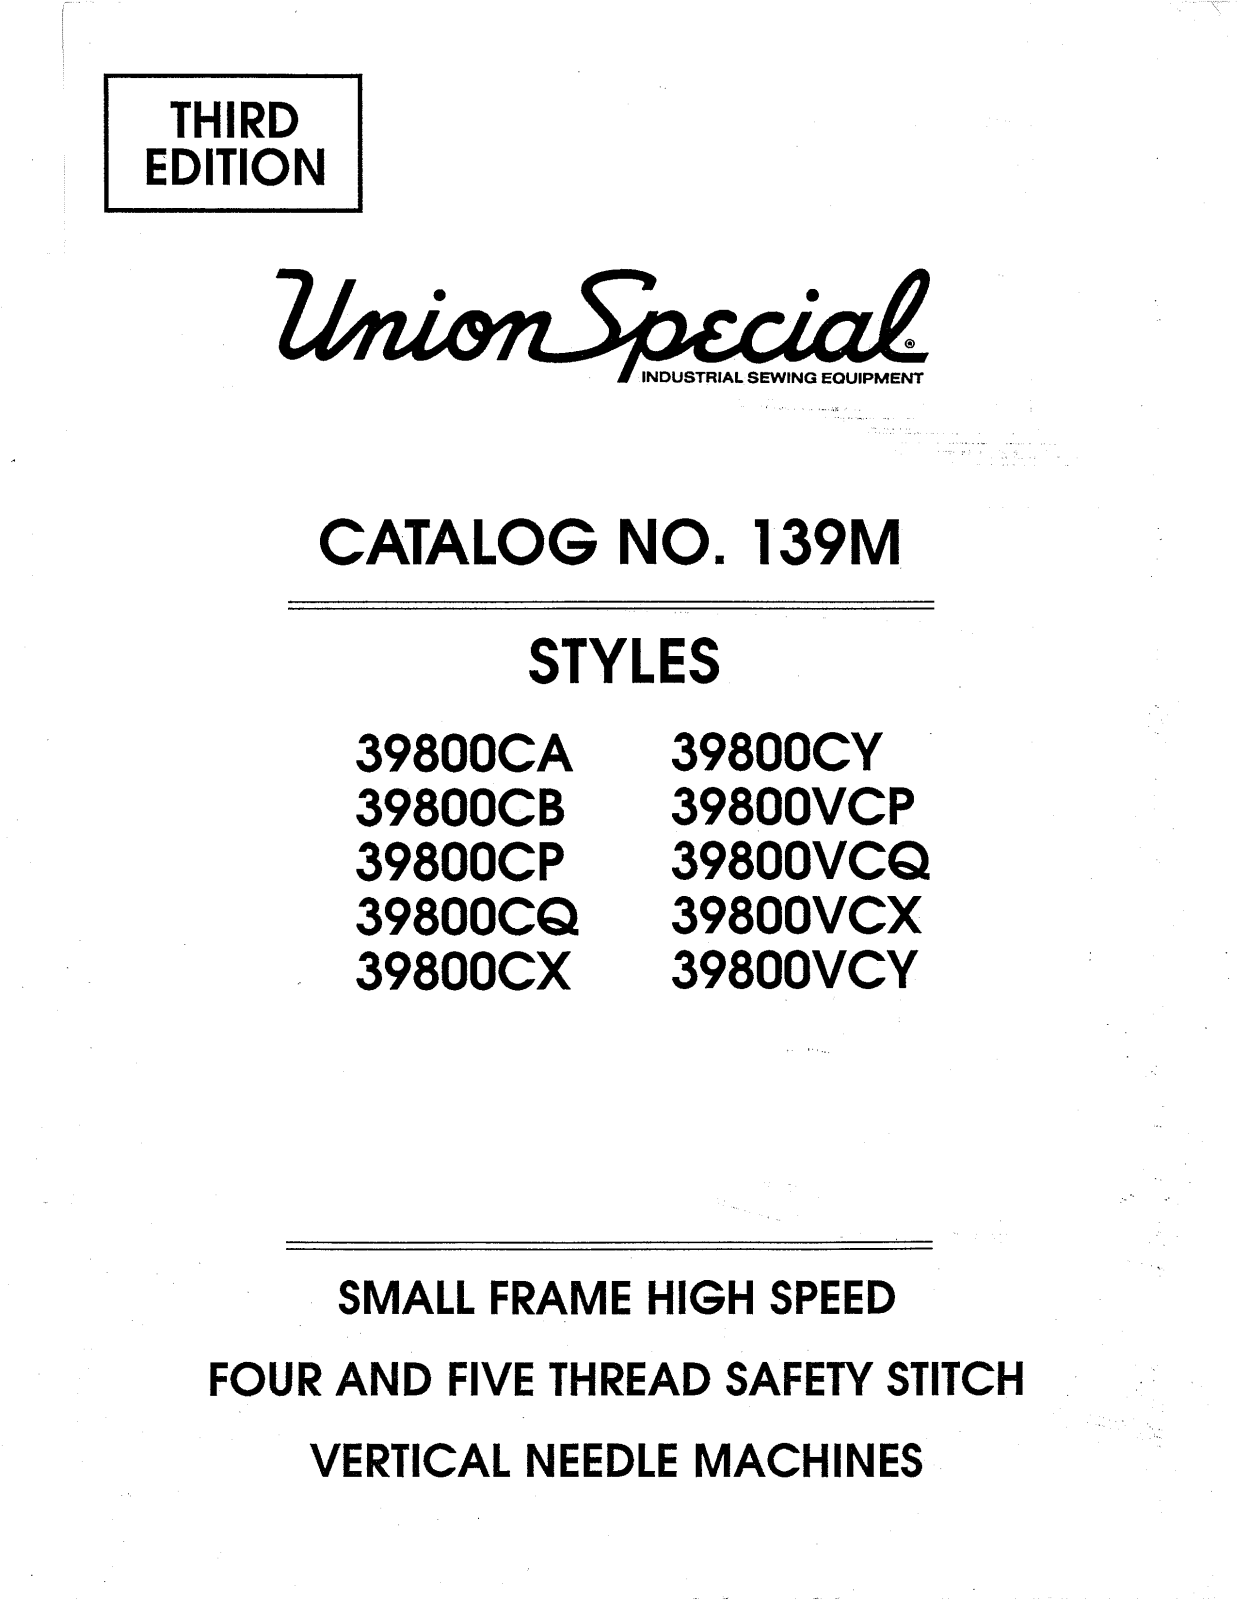 Union Special 39800CA, 39800CB, 39800CP, 39800CQ, 39800CX Parts List